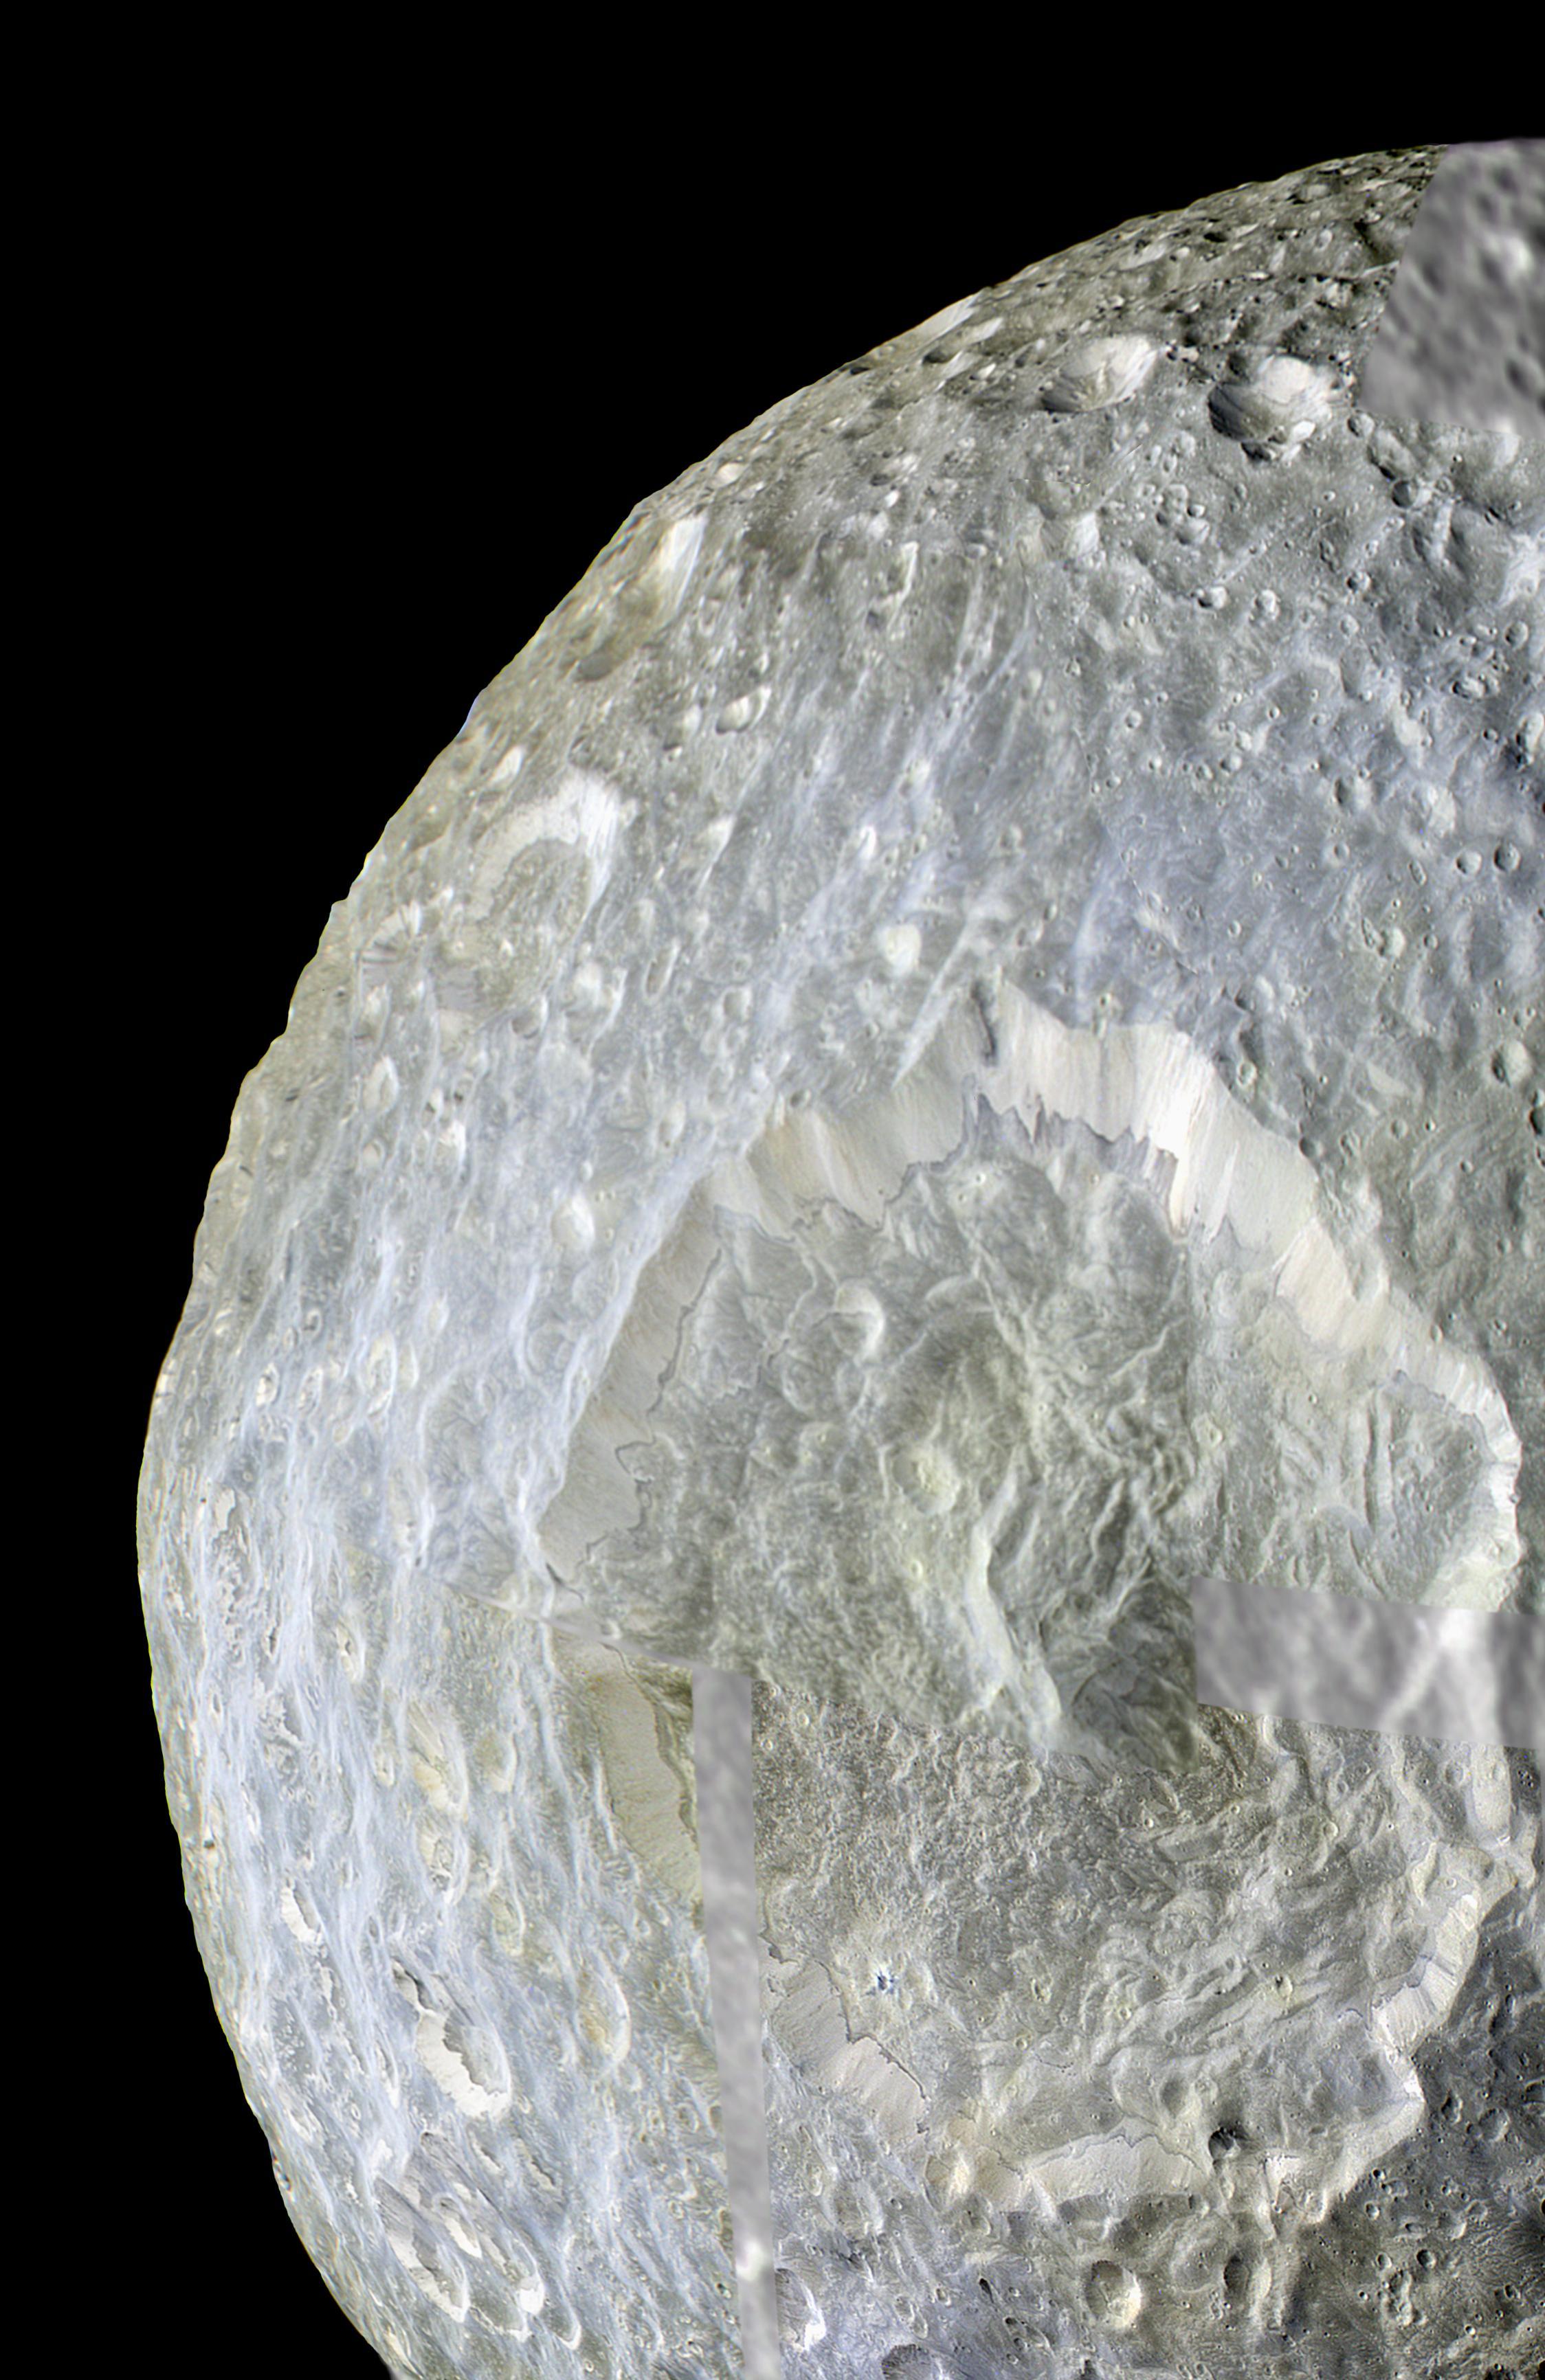 لقطة مقربة من قمر كثير التضاريس وتبرز فيه فوّهة كبيرة جدّاً نسبيّاً